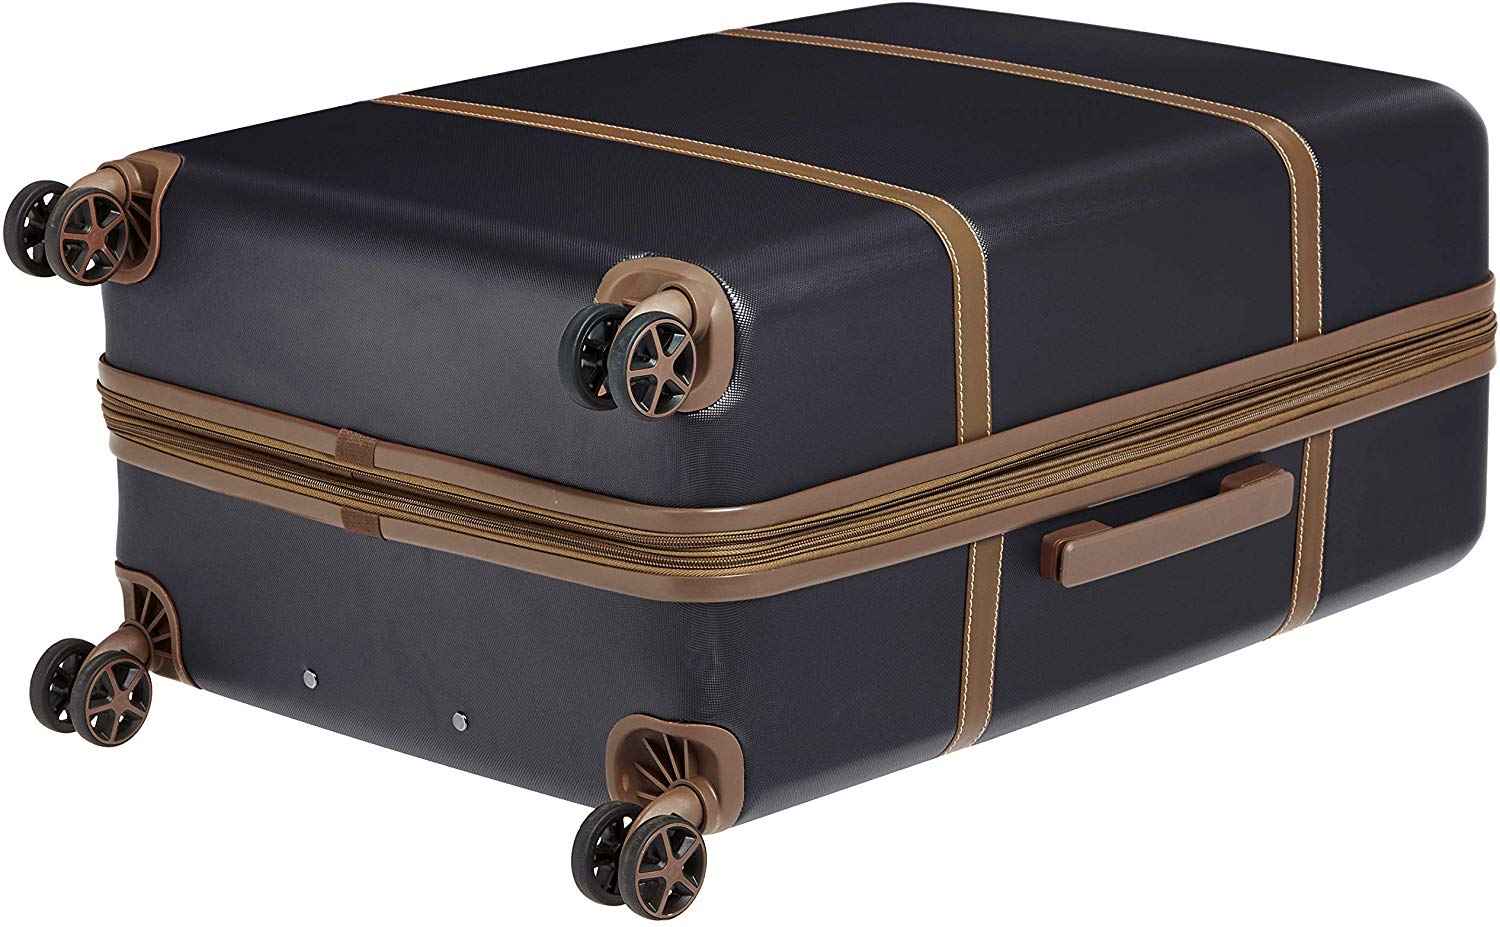 AmazonBasics-Vienna-Expandable-Luggage-Spinner-Suitcase---78-cm,-Black